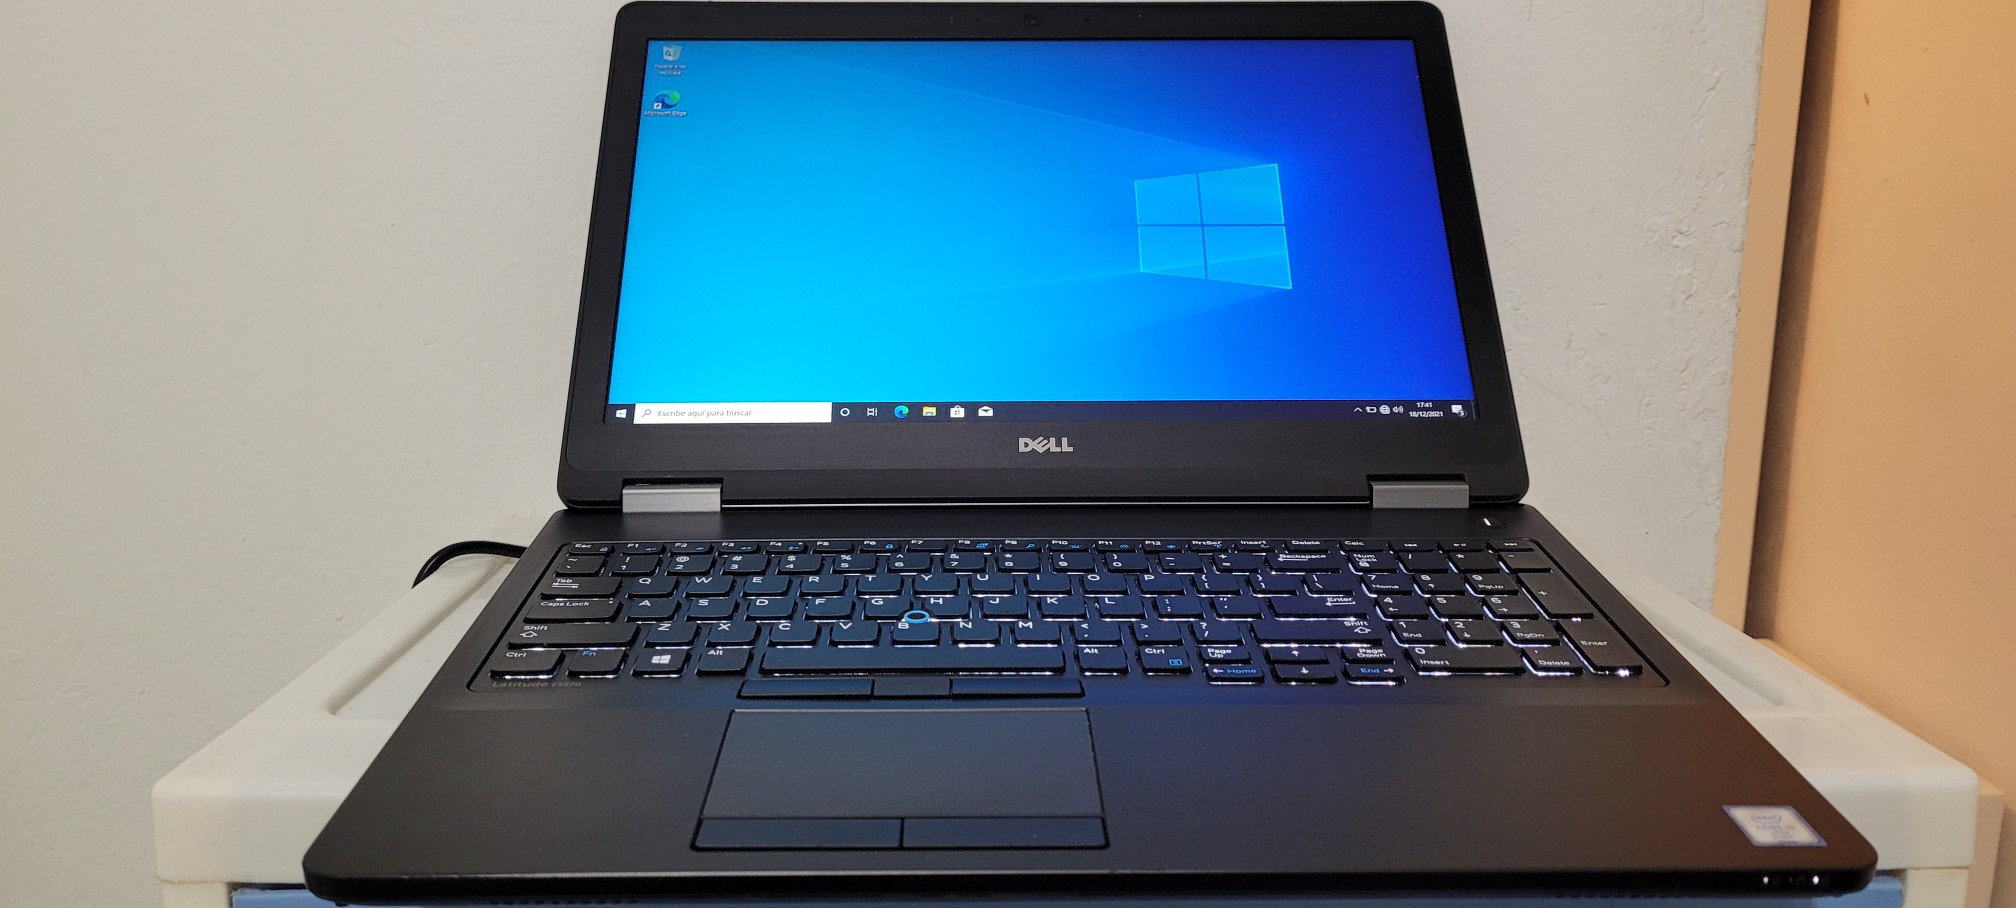 computadoras y laptops - Dell 5570 17 Pulg Core i5 6ta Ram 8gb ddr4 Disco 500gb teclado iluminado